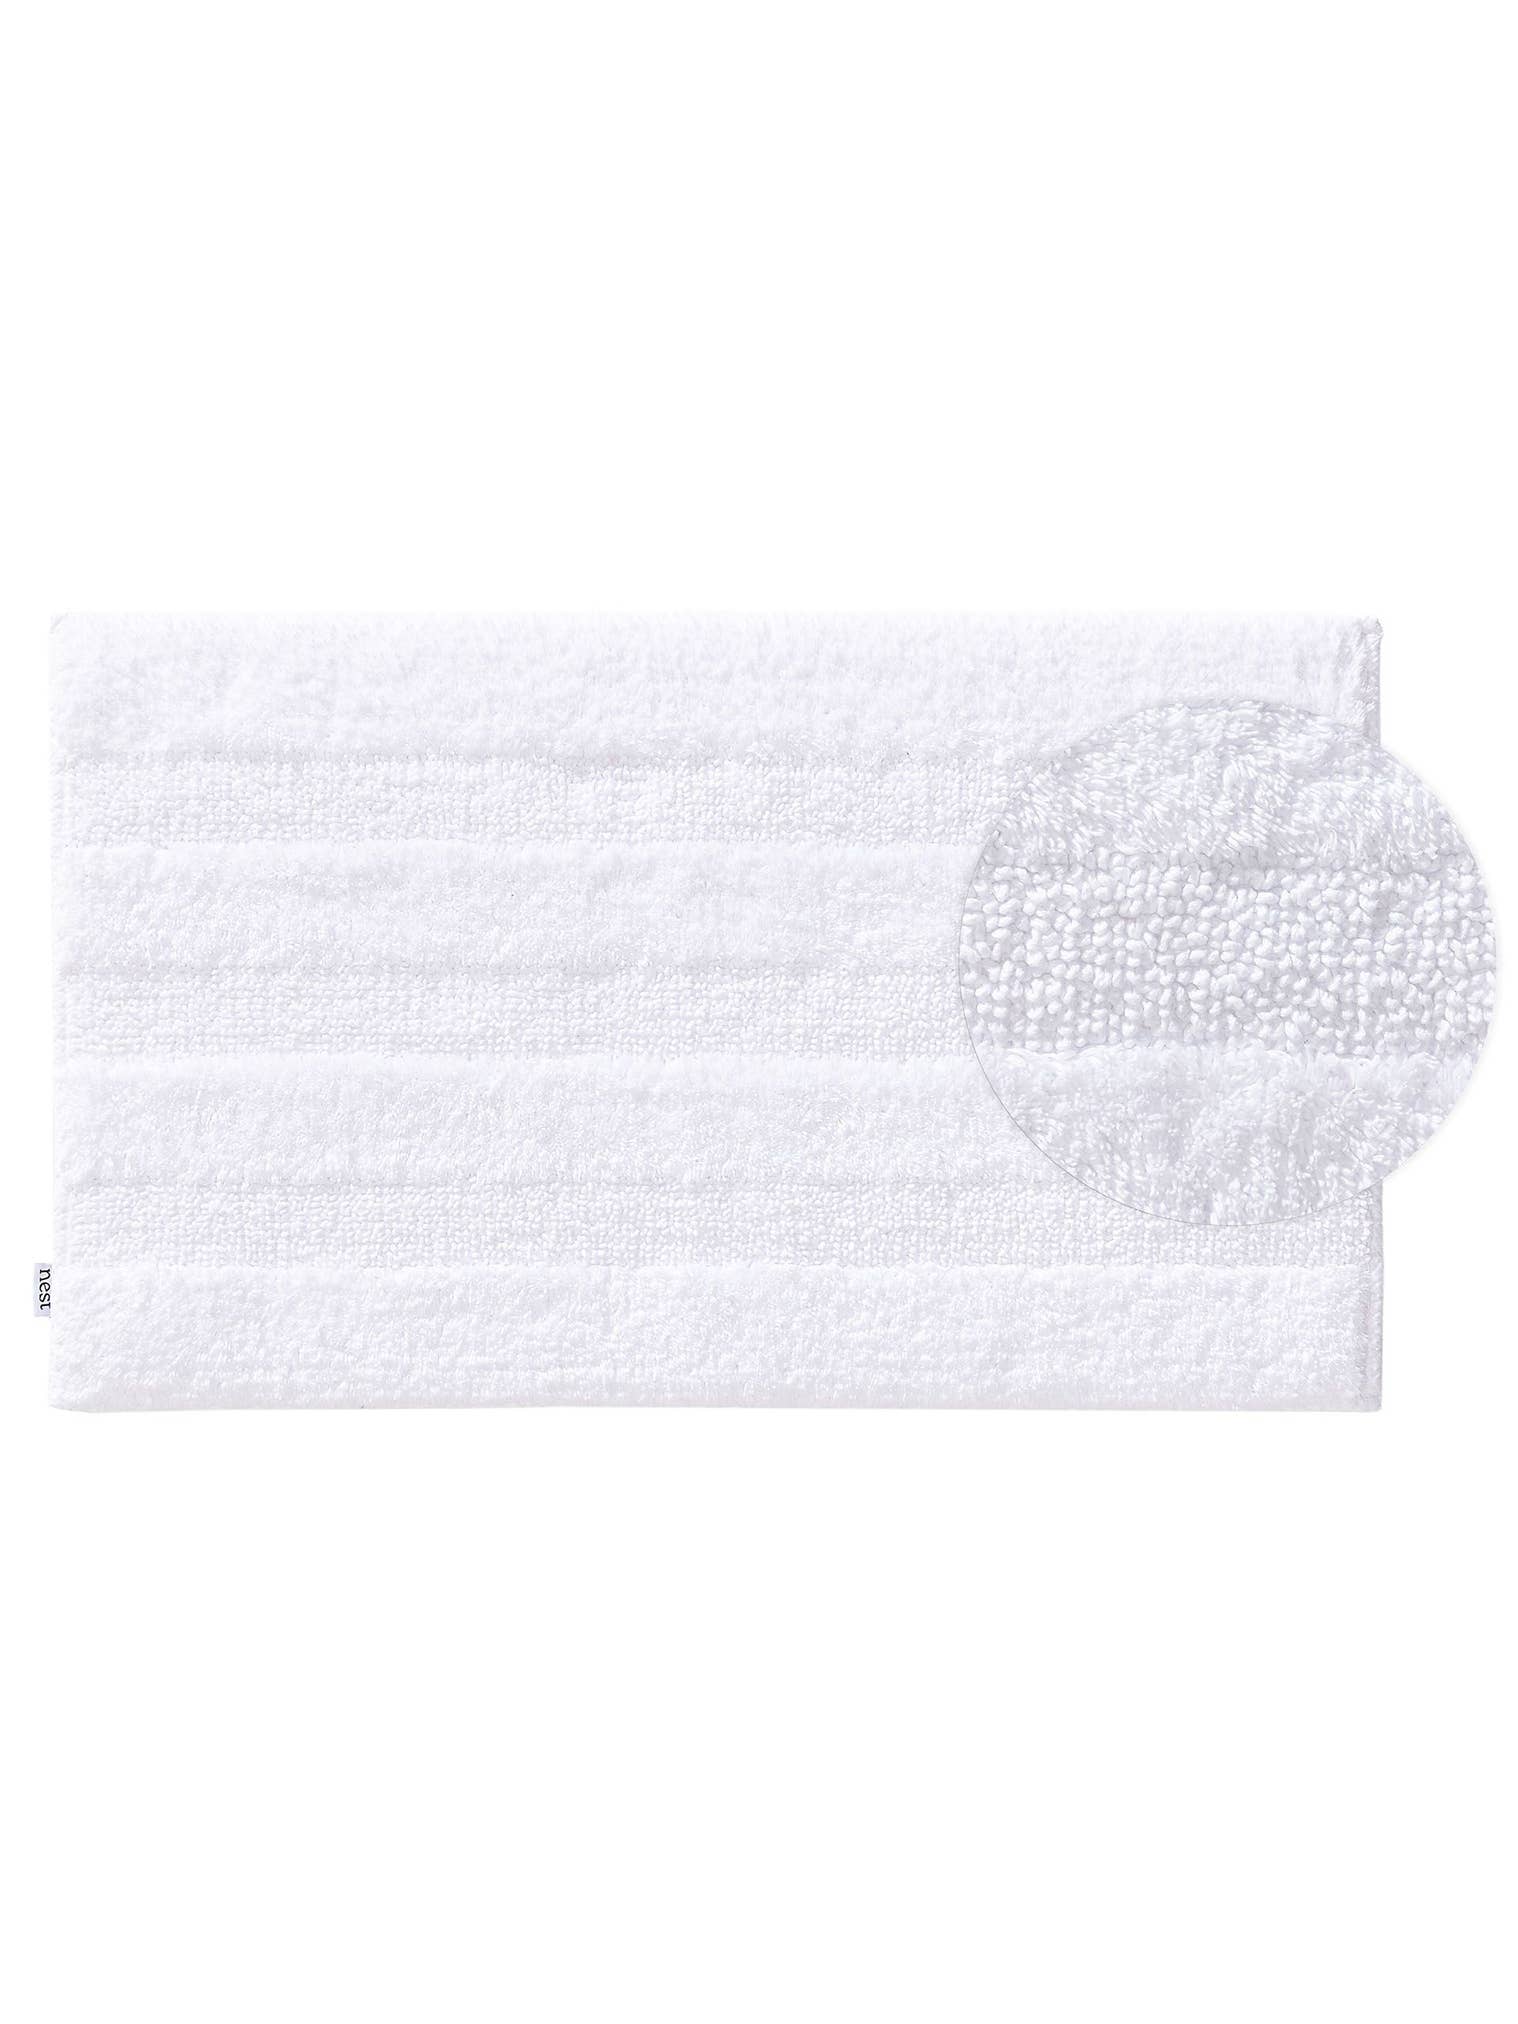 Teppich aus 100% Baumwolle in Weiß mit bis 5 mm hohem Flor von benuta Nest